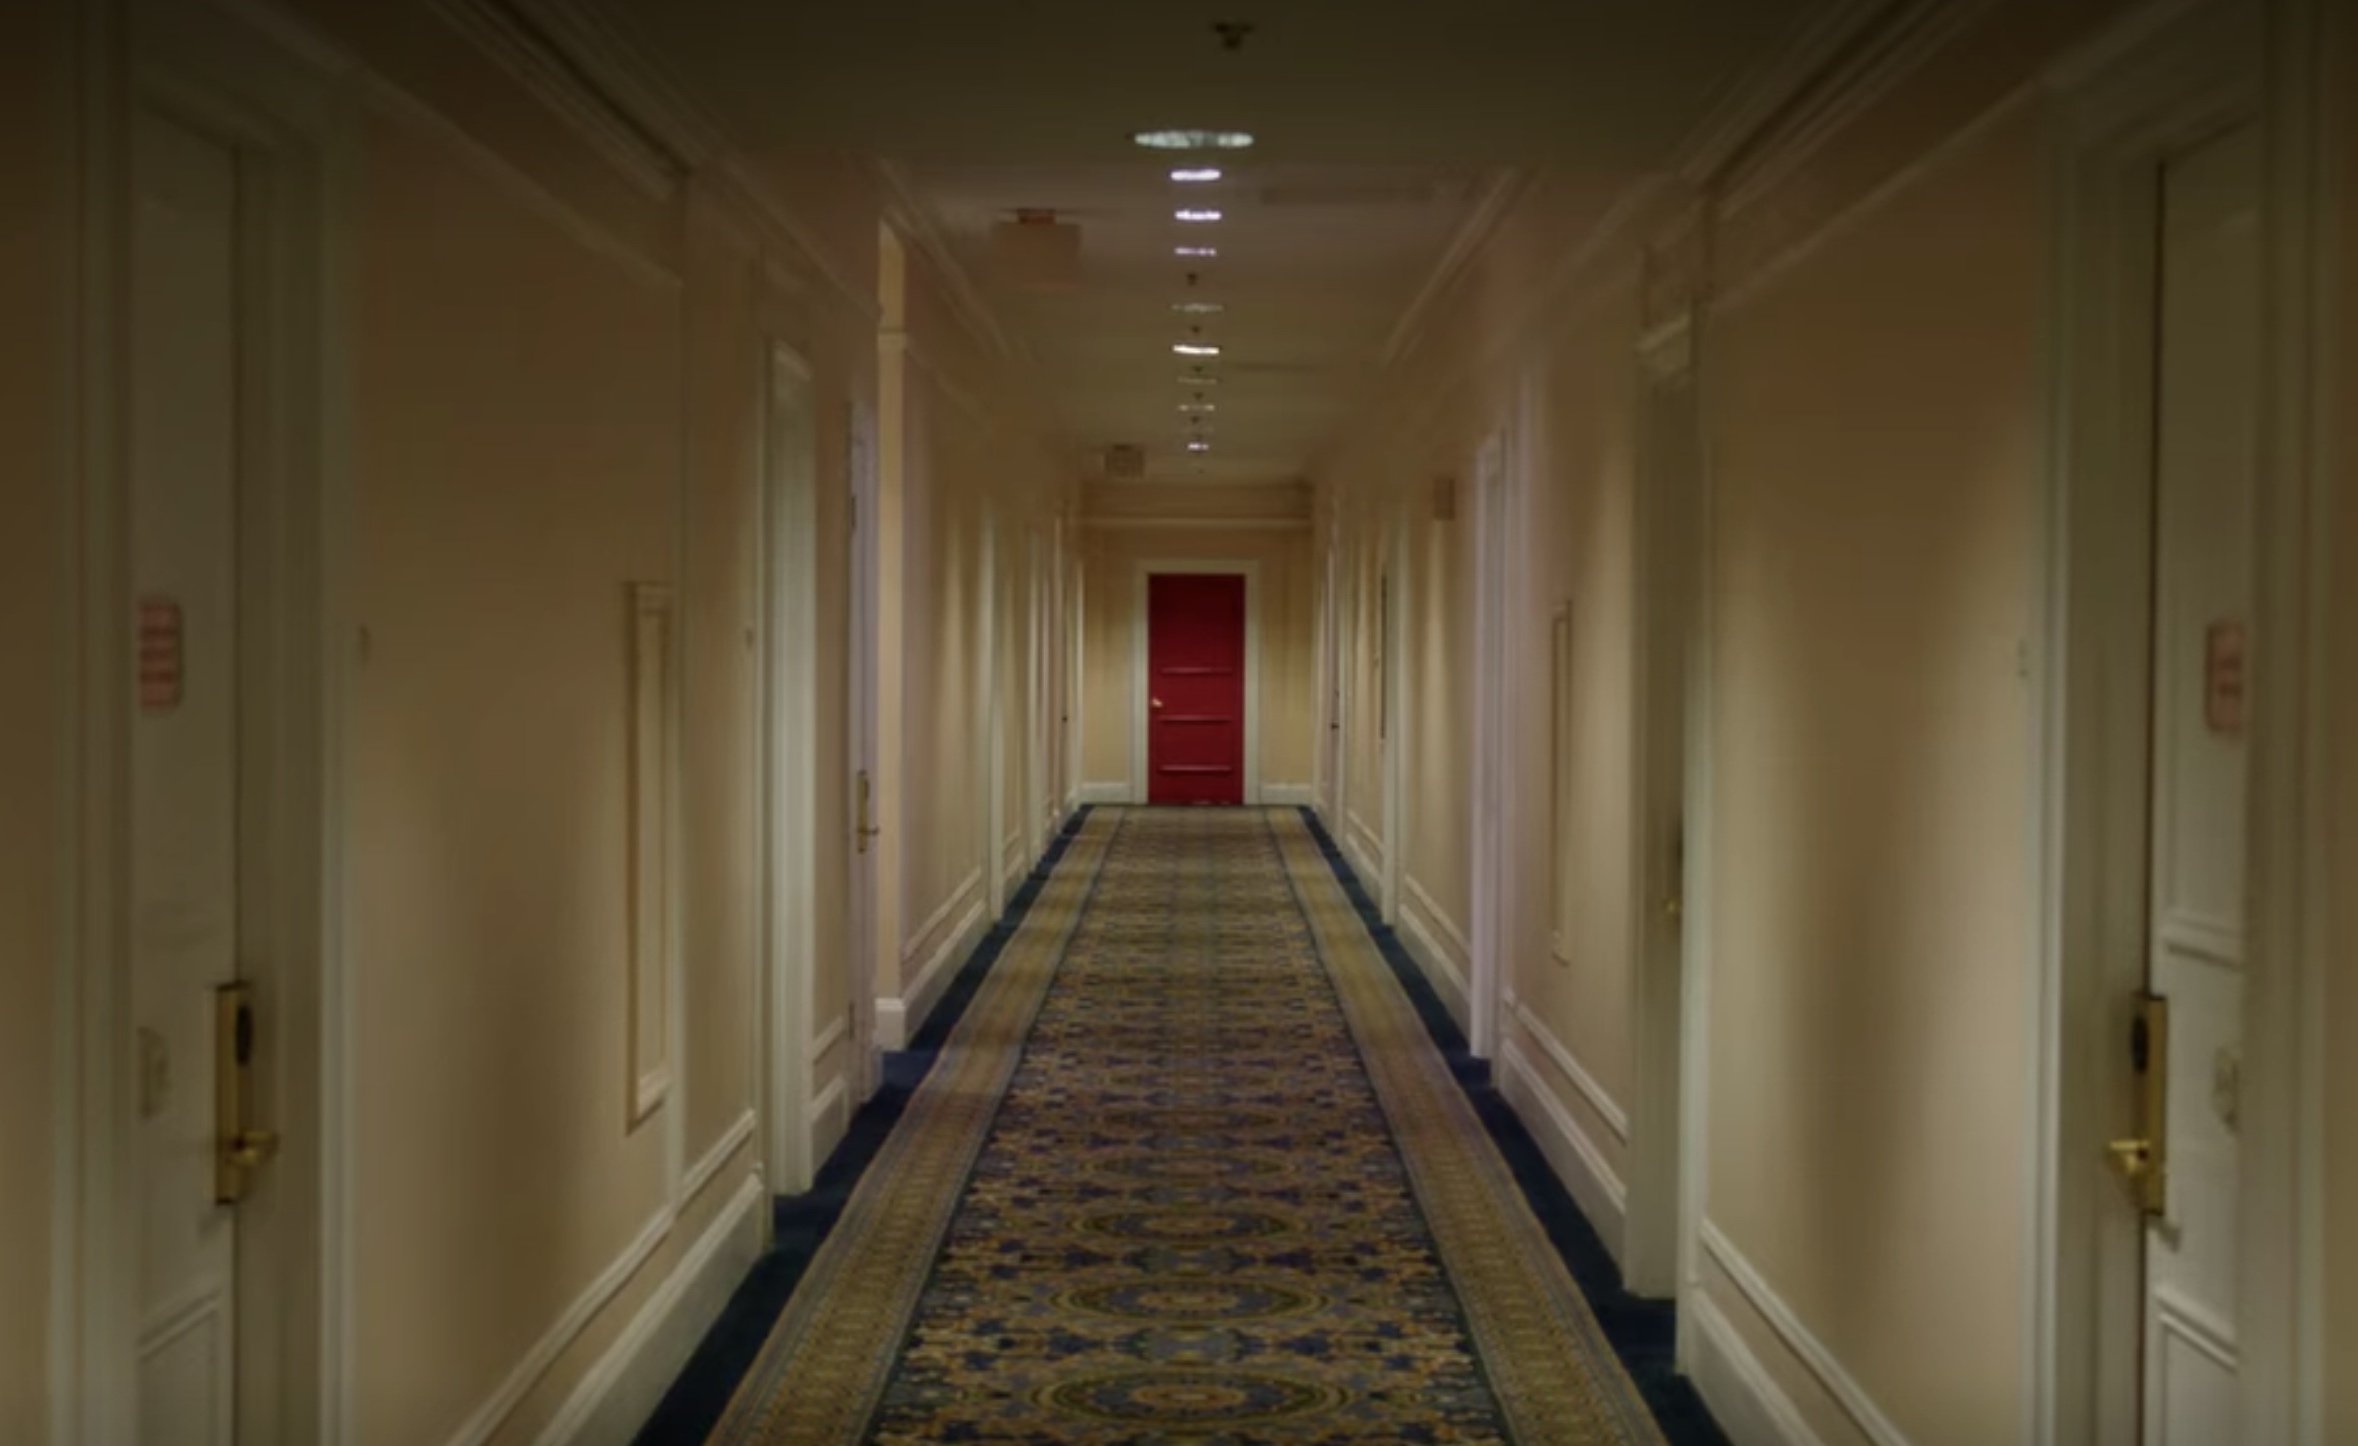 Hallway of doors